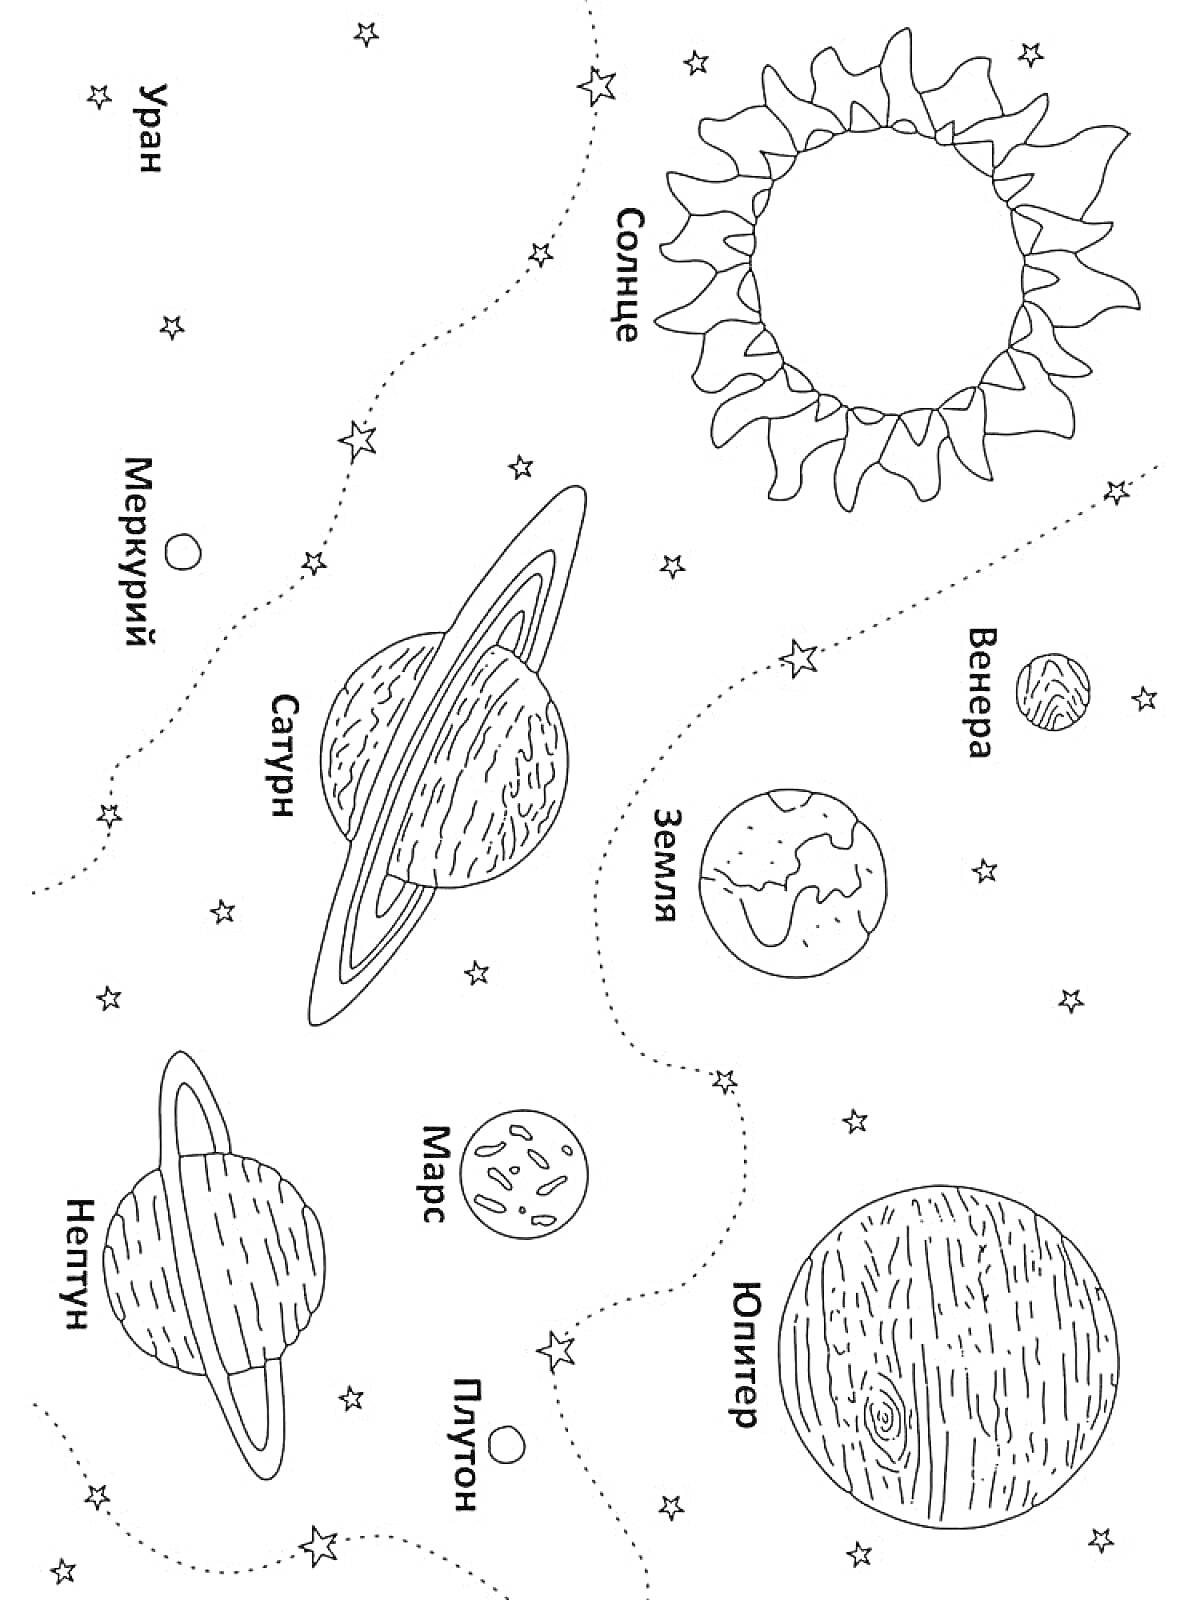 Планеты Солнечной системы с подписями: Солнце, Меркурий, Венера, Земля, Марс, Юпитер, Сатурн, Уран, Нептун, Плутон. Изображены планеты, звезды, орбиты.